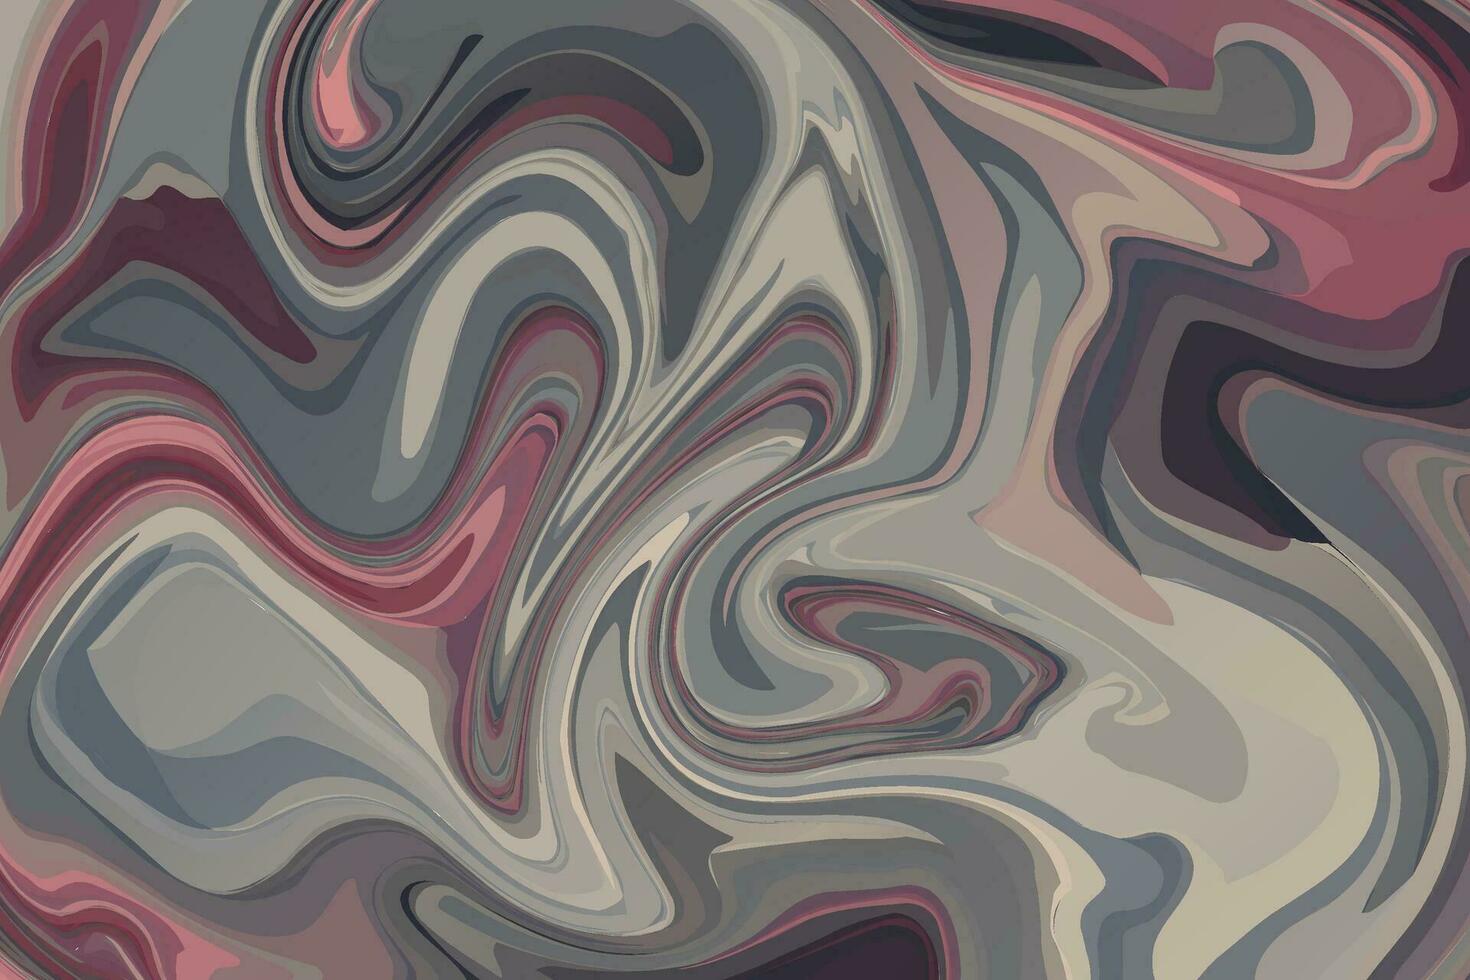 abstrakter marmorbeschaffenheitshintergrund. vektor